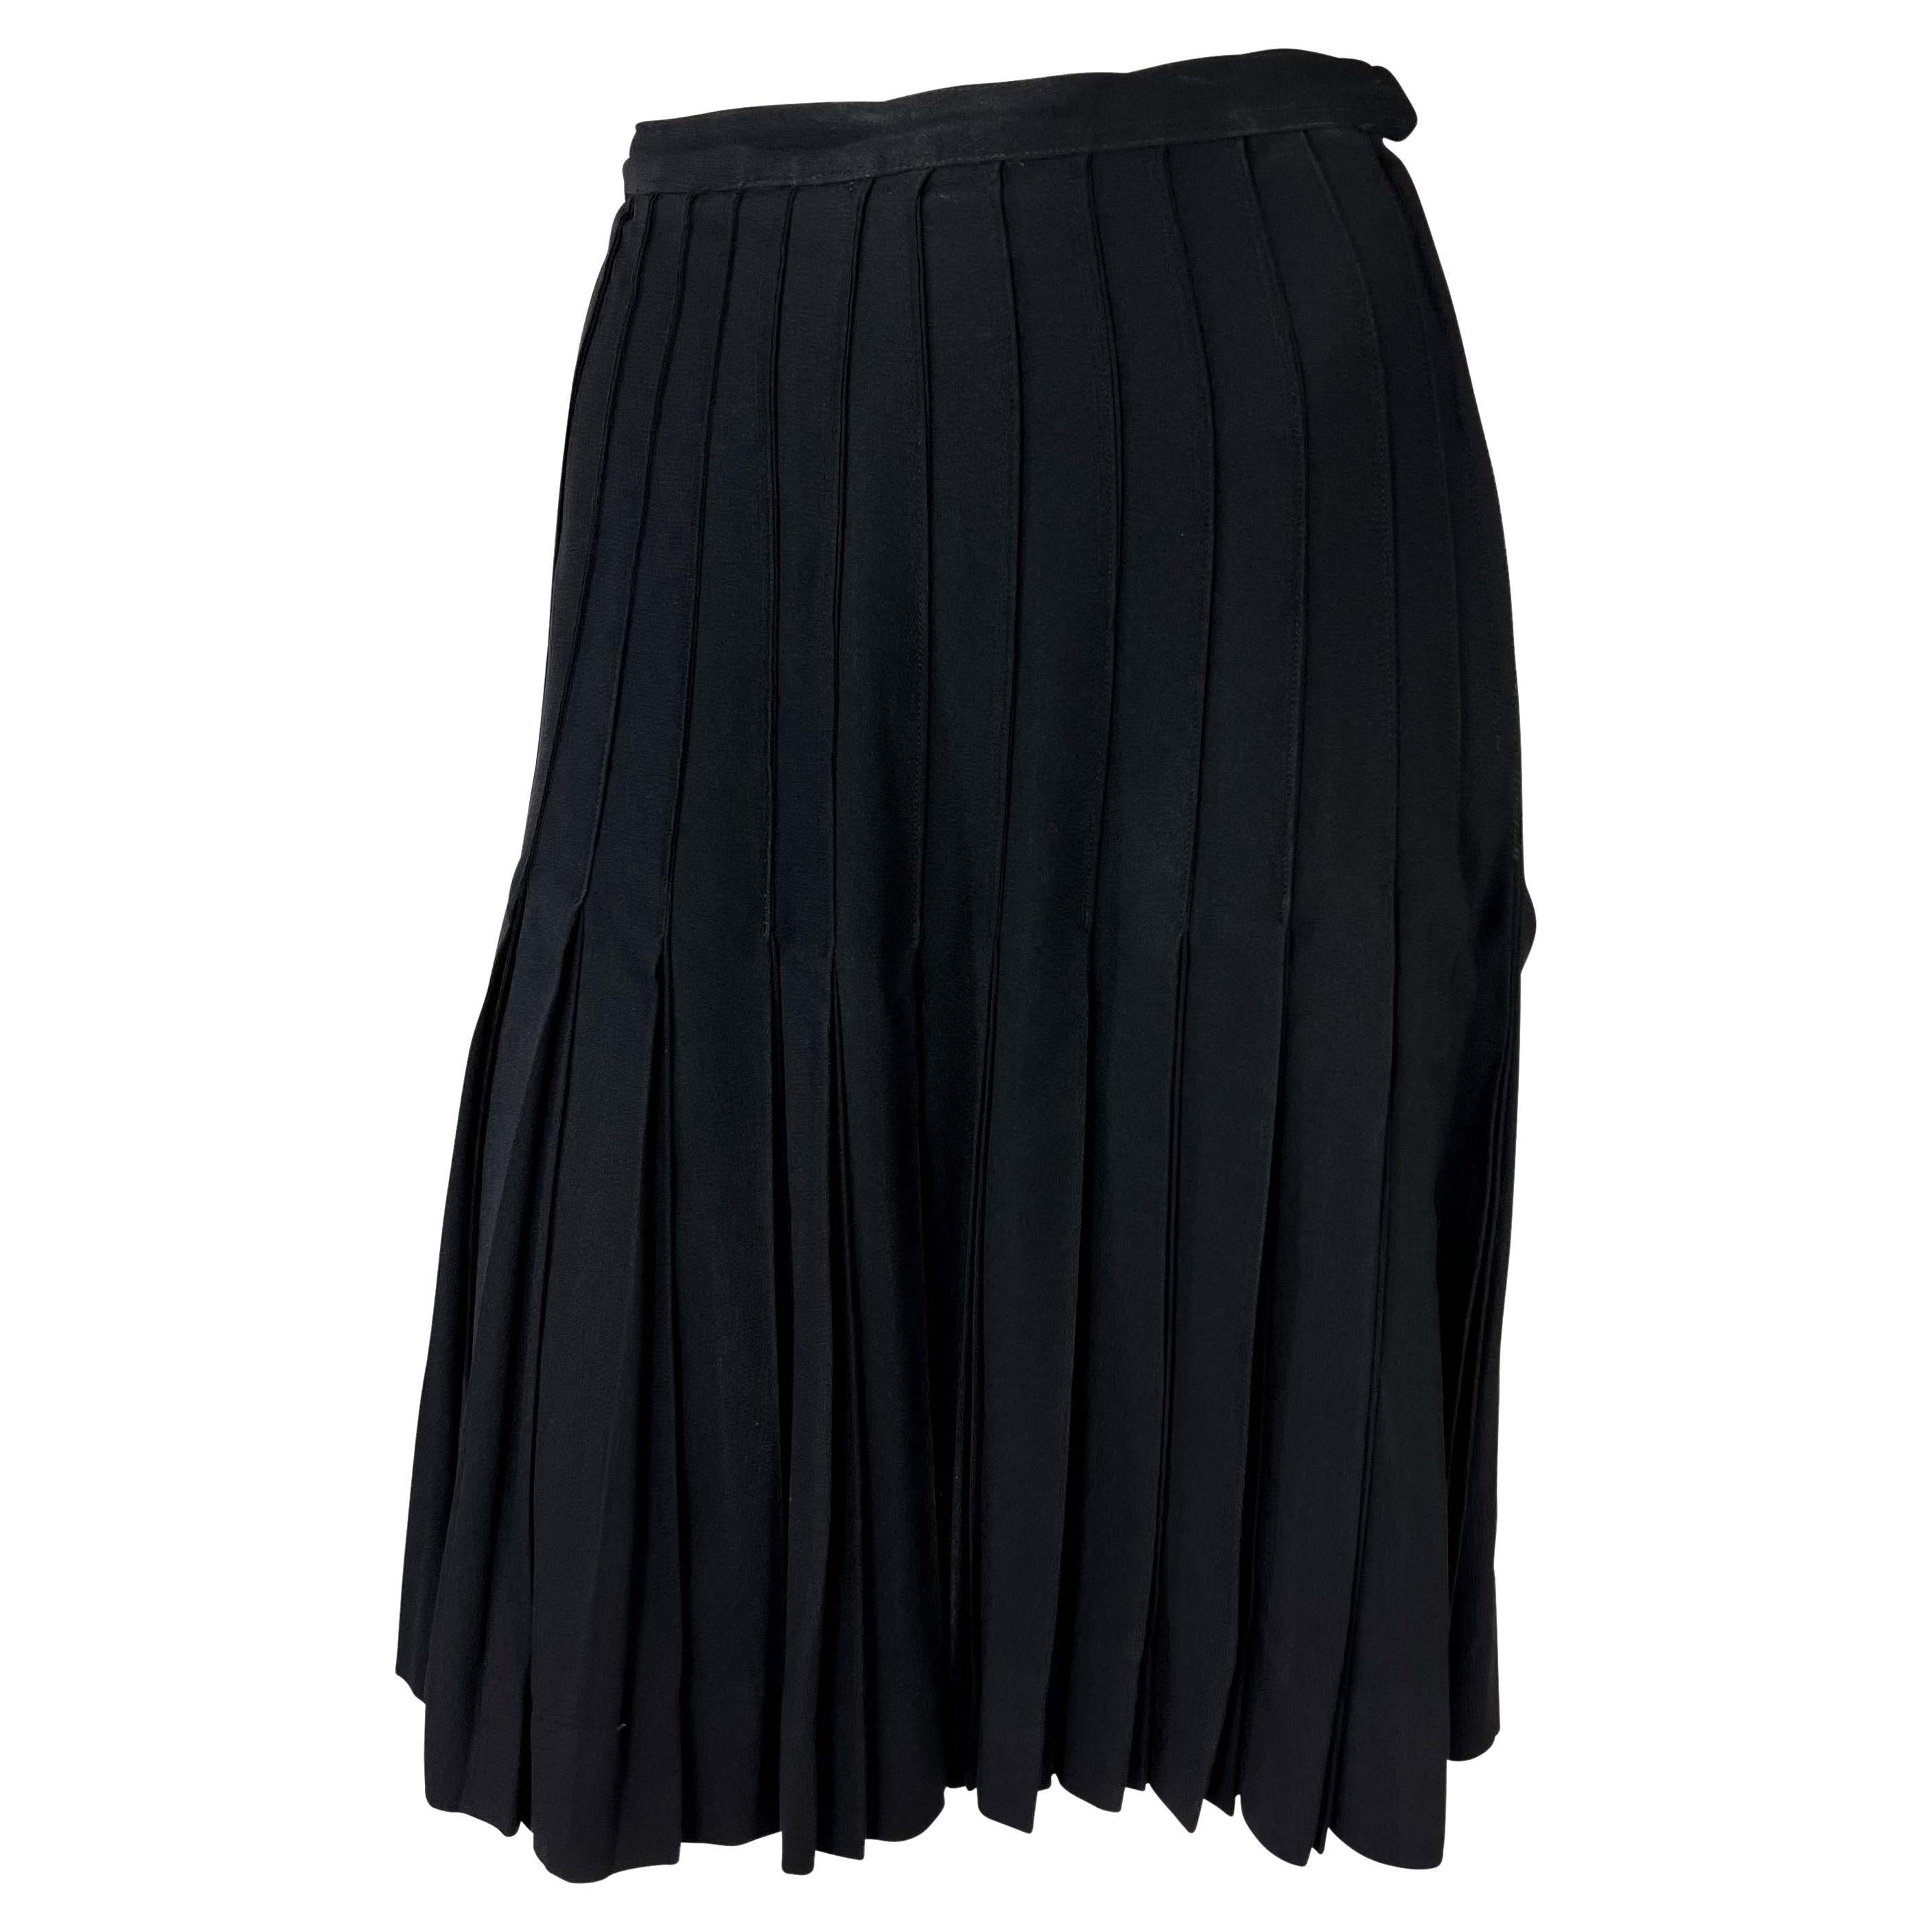 Présentation d'une jupe noire plissée en accordéon conçue par Yves Saint Laurent pour sa ligne de prêt-à-porter, Saint Laurent Rive Gauche, dans les années 1980. Les plis sont cousus de manière experte pour créer des lignes contrôlées de la ceinture